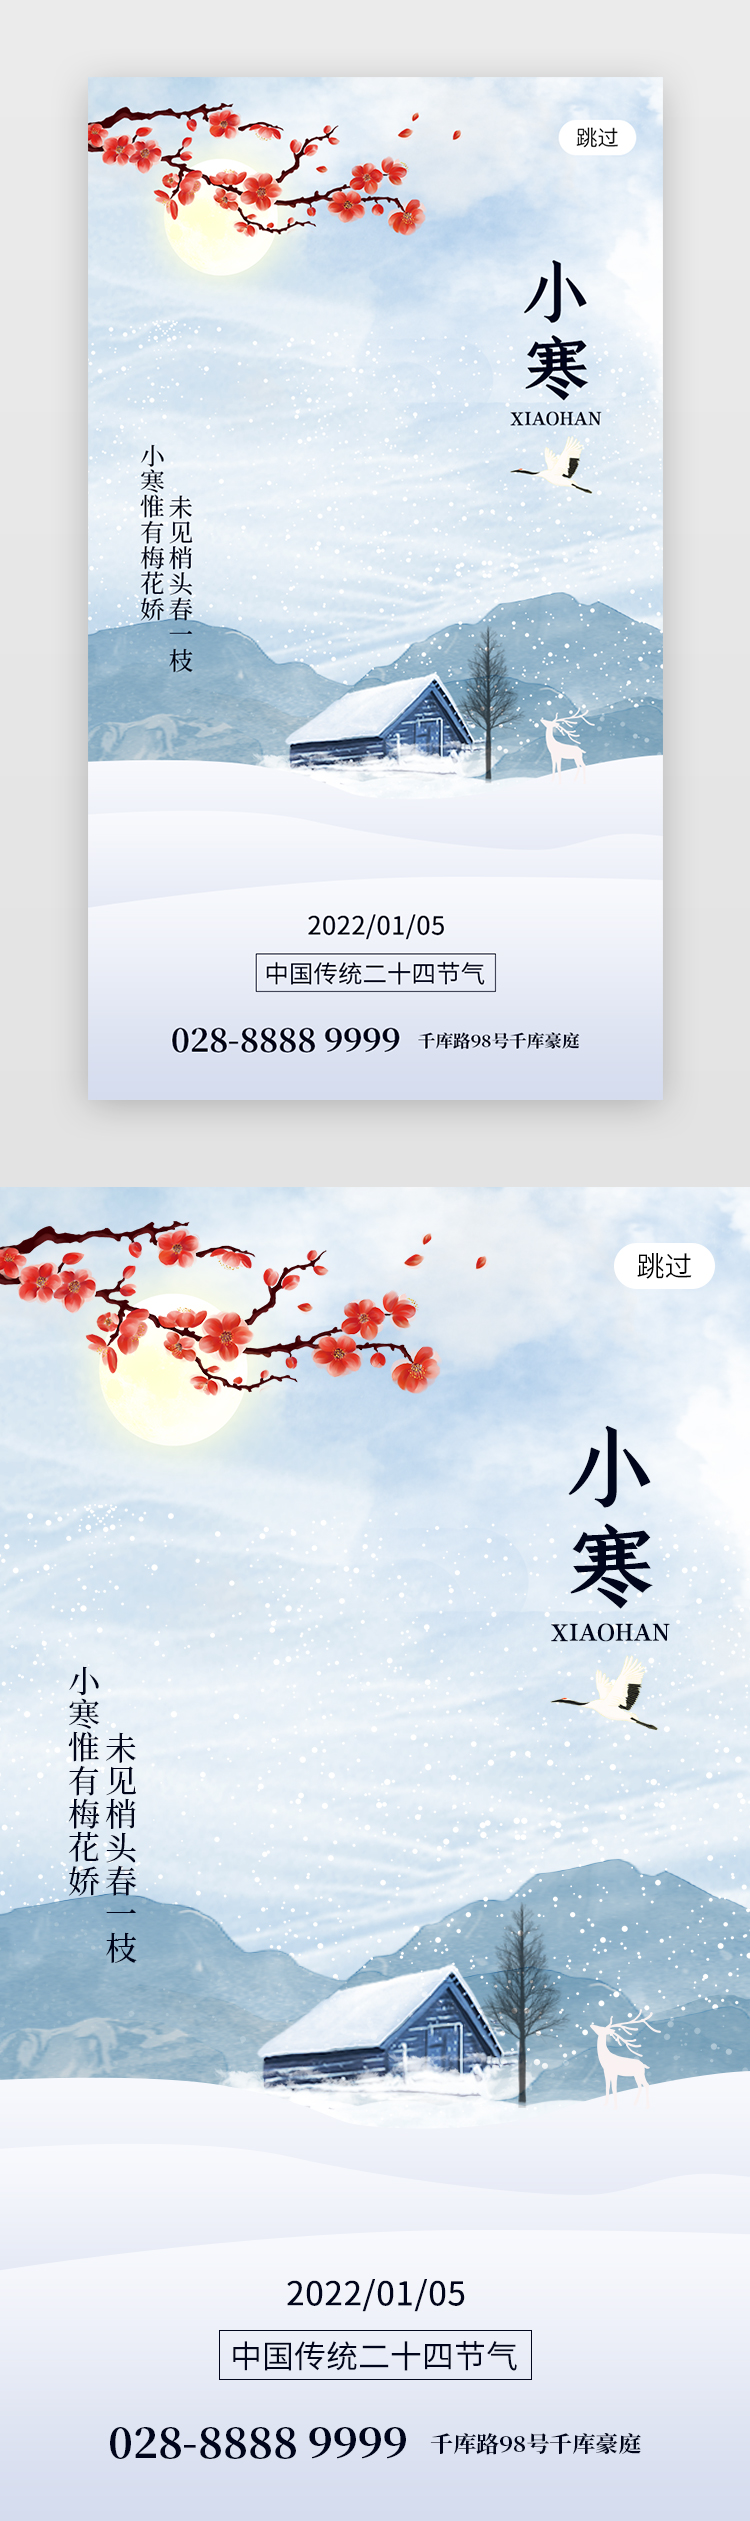 二十四节气小寒 app闪屏创意浅蓝色雪屋图片